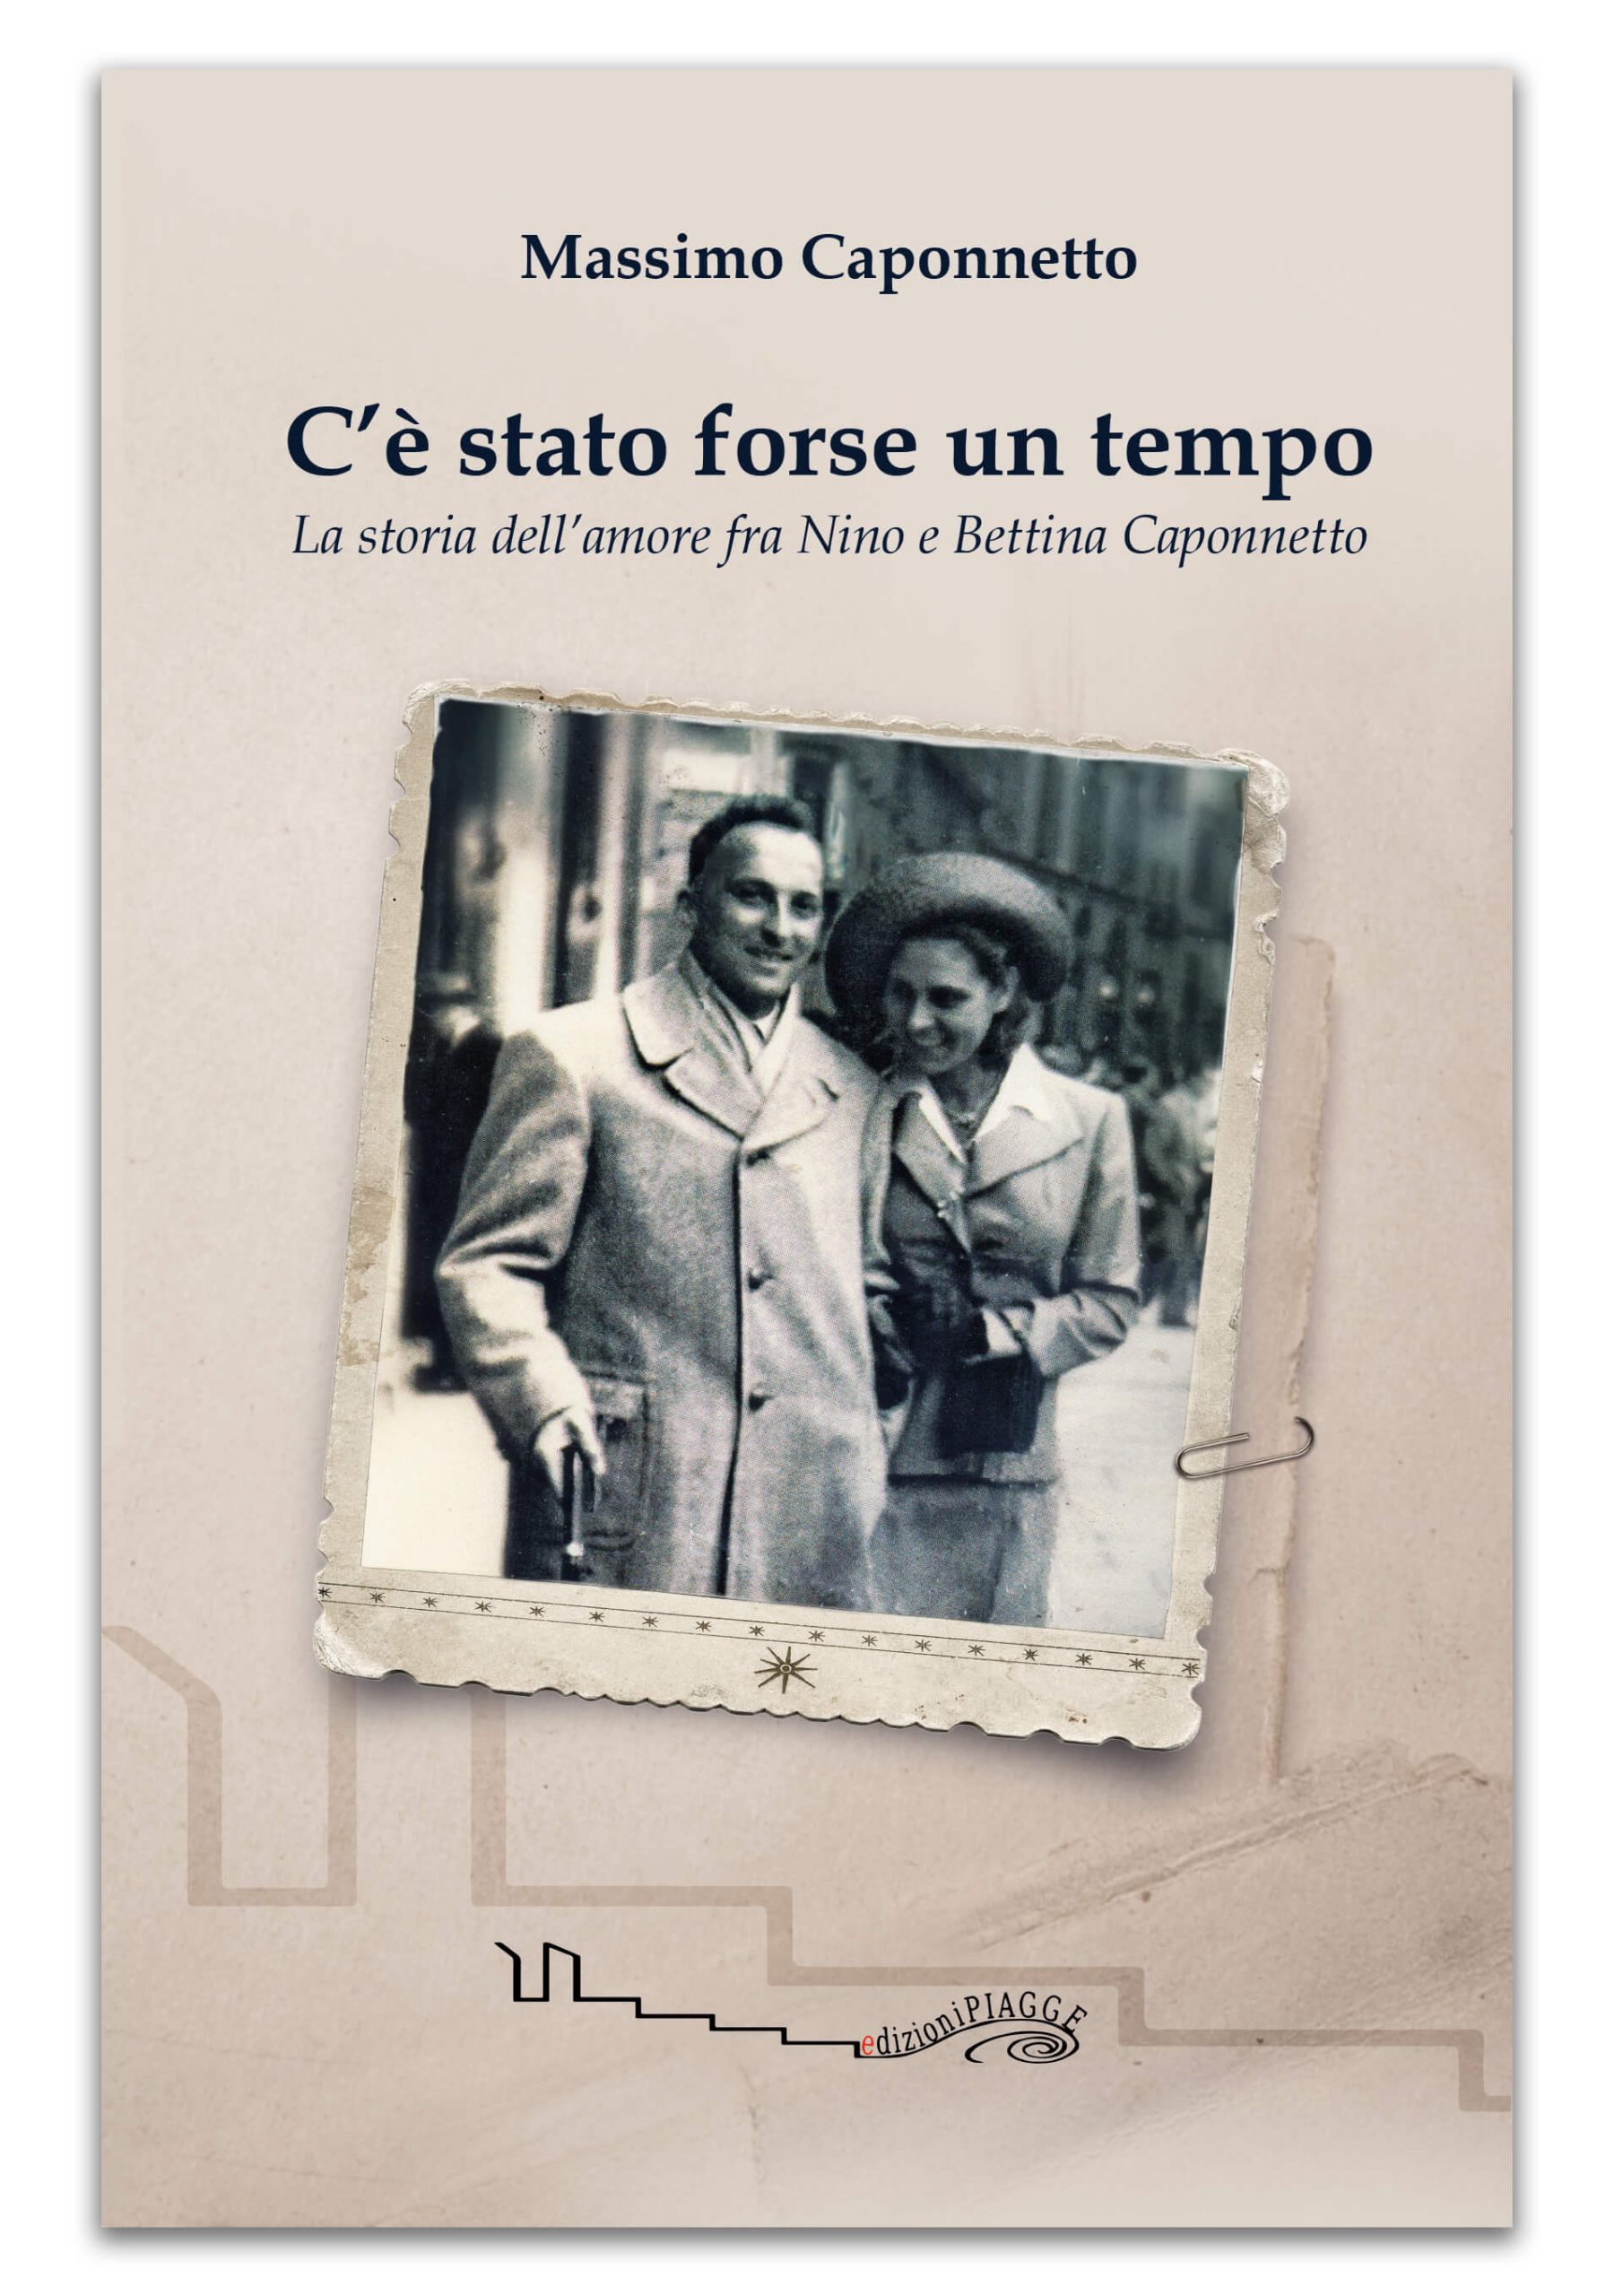 Pioggia di premi per “C’è stato forse un tempo”, di Massimo Caponnetto – edizioniPIAGGE